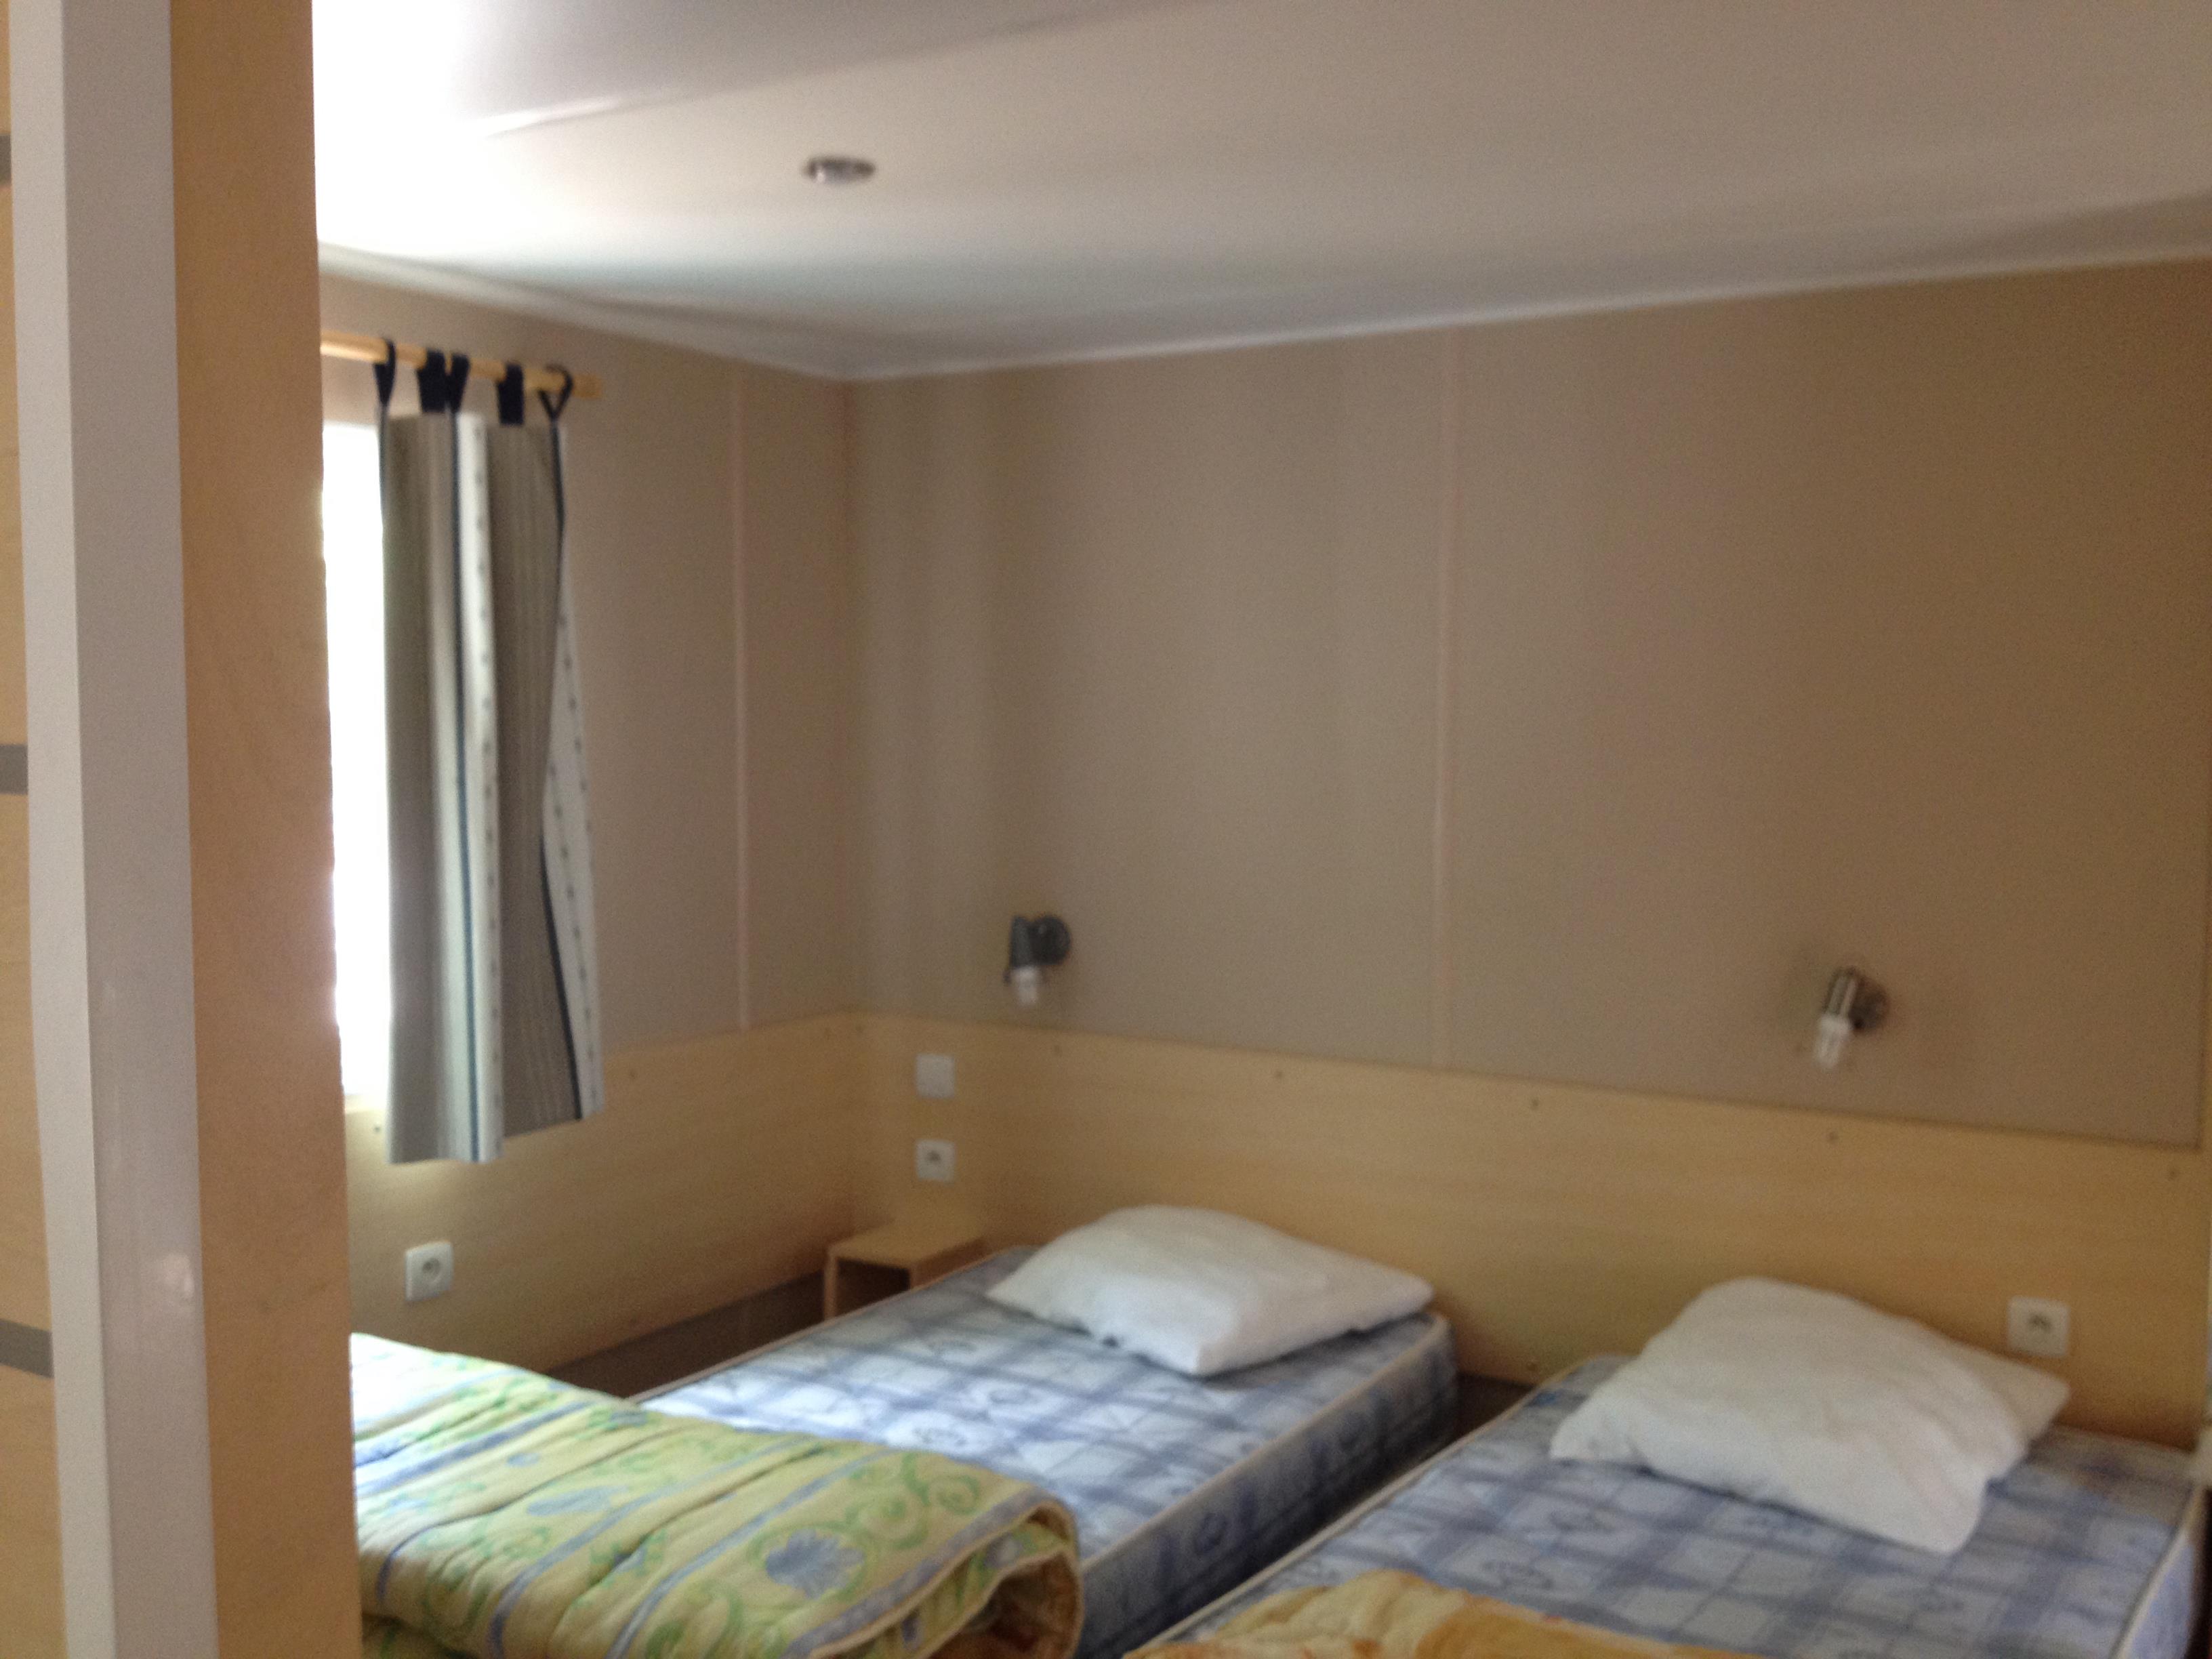 Mietunterkunft - Mobile Home Ausgestattet Für Behindertes Irm N°18 2 Zimmer - Camping Le Sous-Bois Ardèche